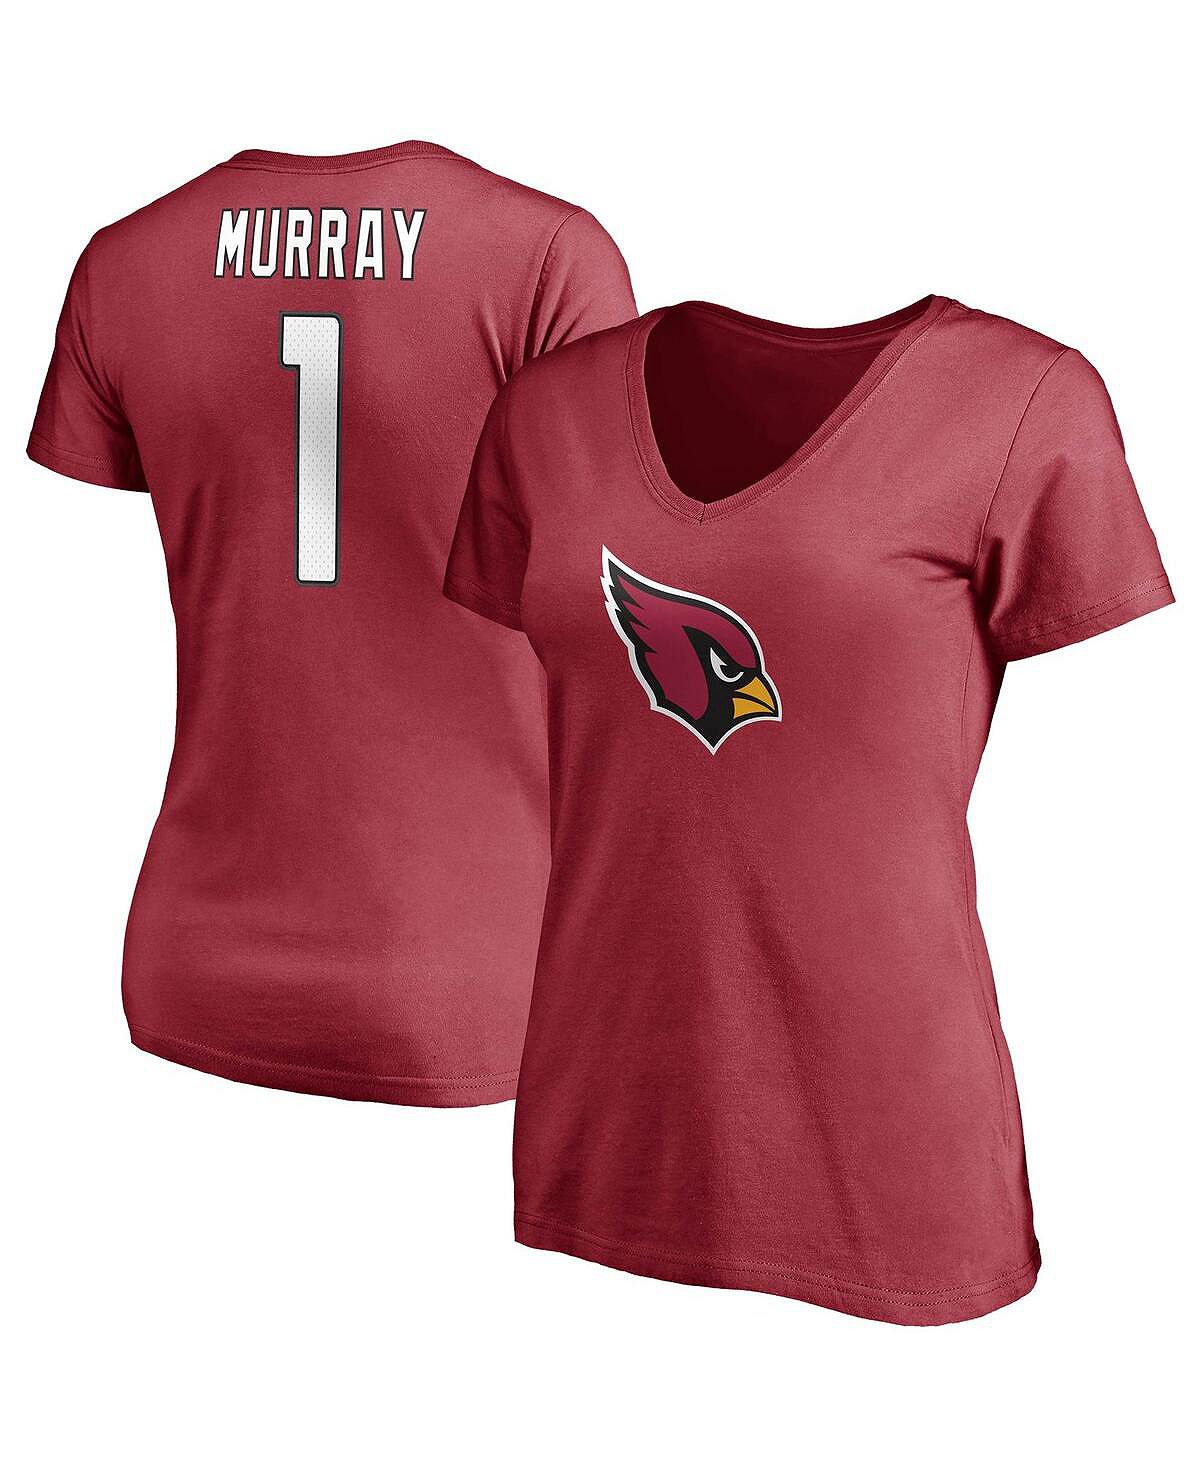 Женская футболка с v-образным вырезом и именем и номером игрока Kyler Murray Cardinal Arizona Cardinals Fanatics